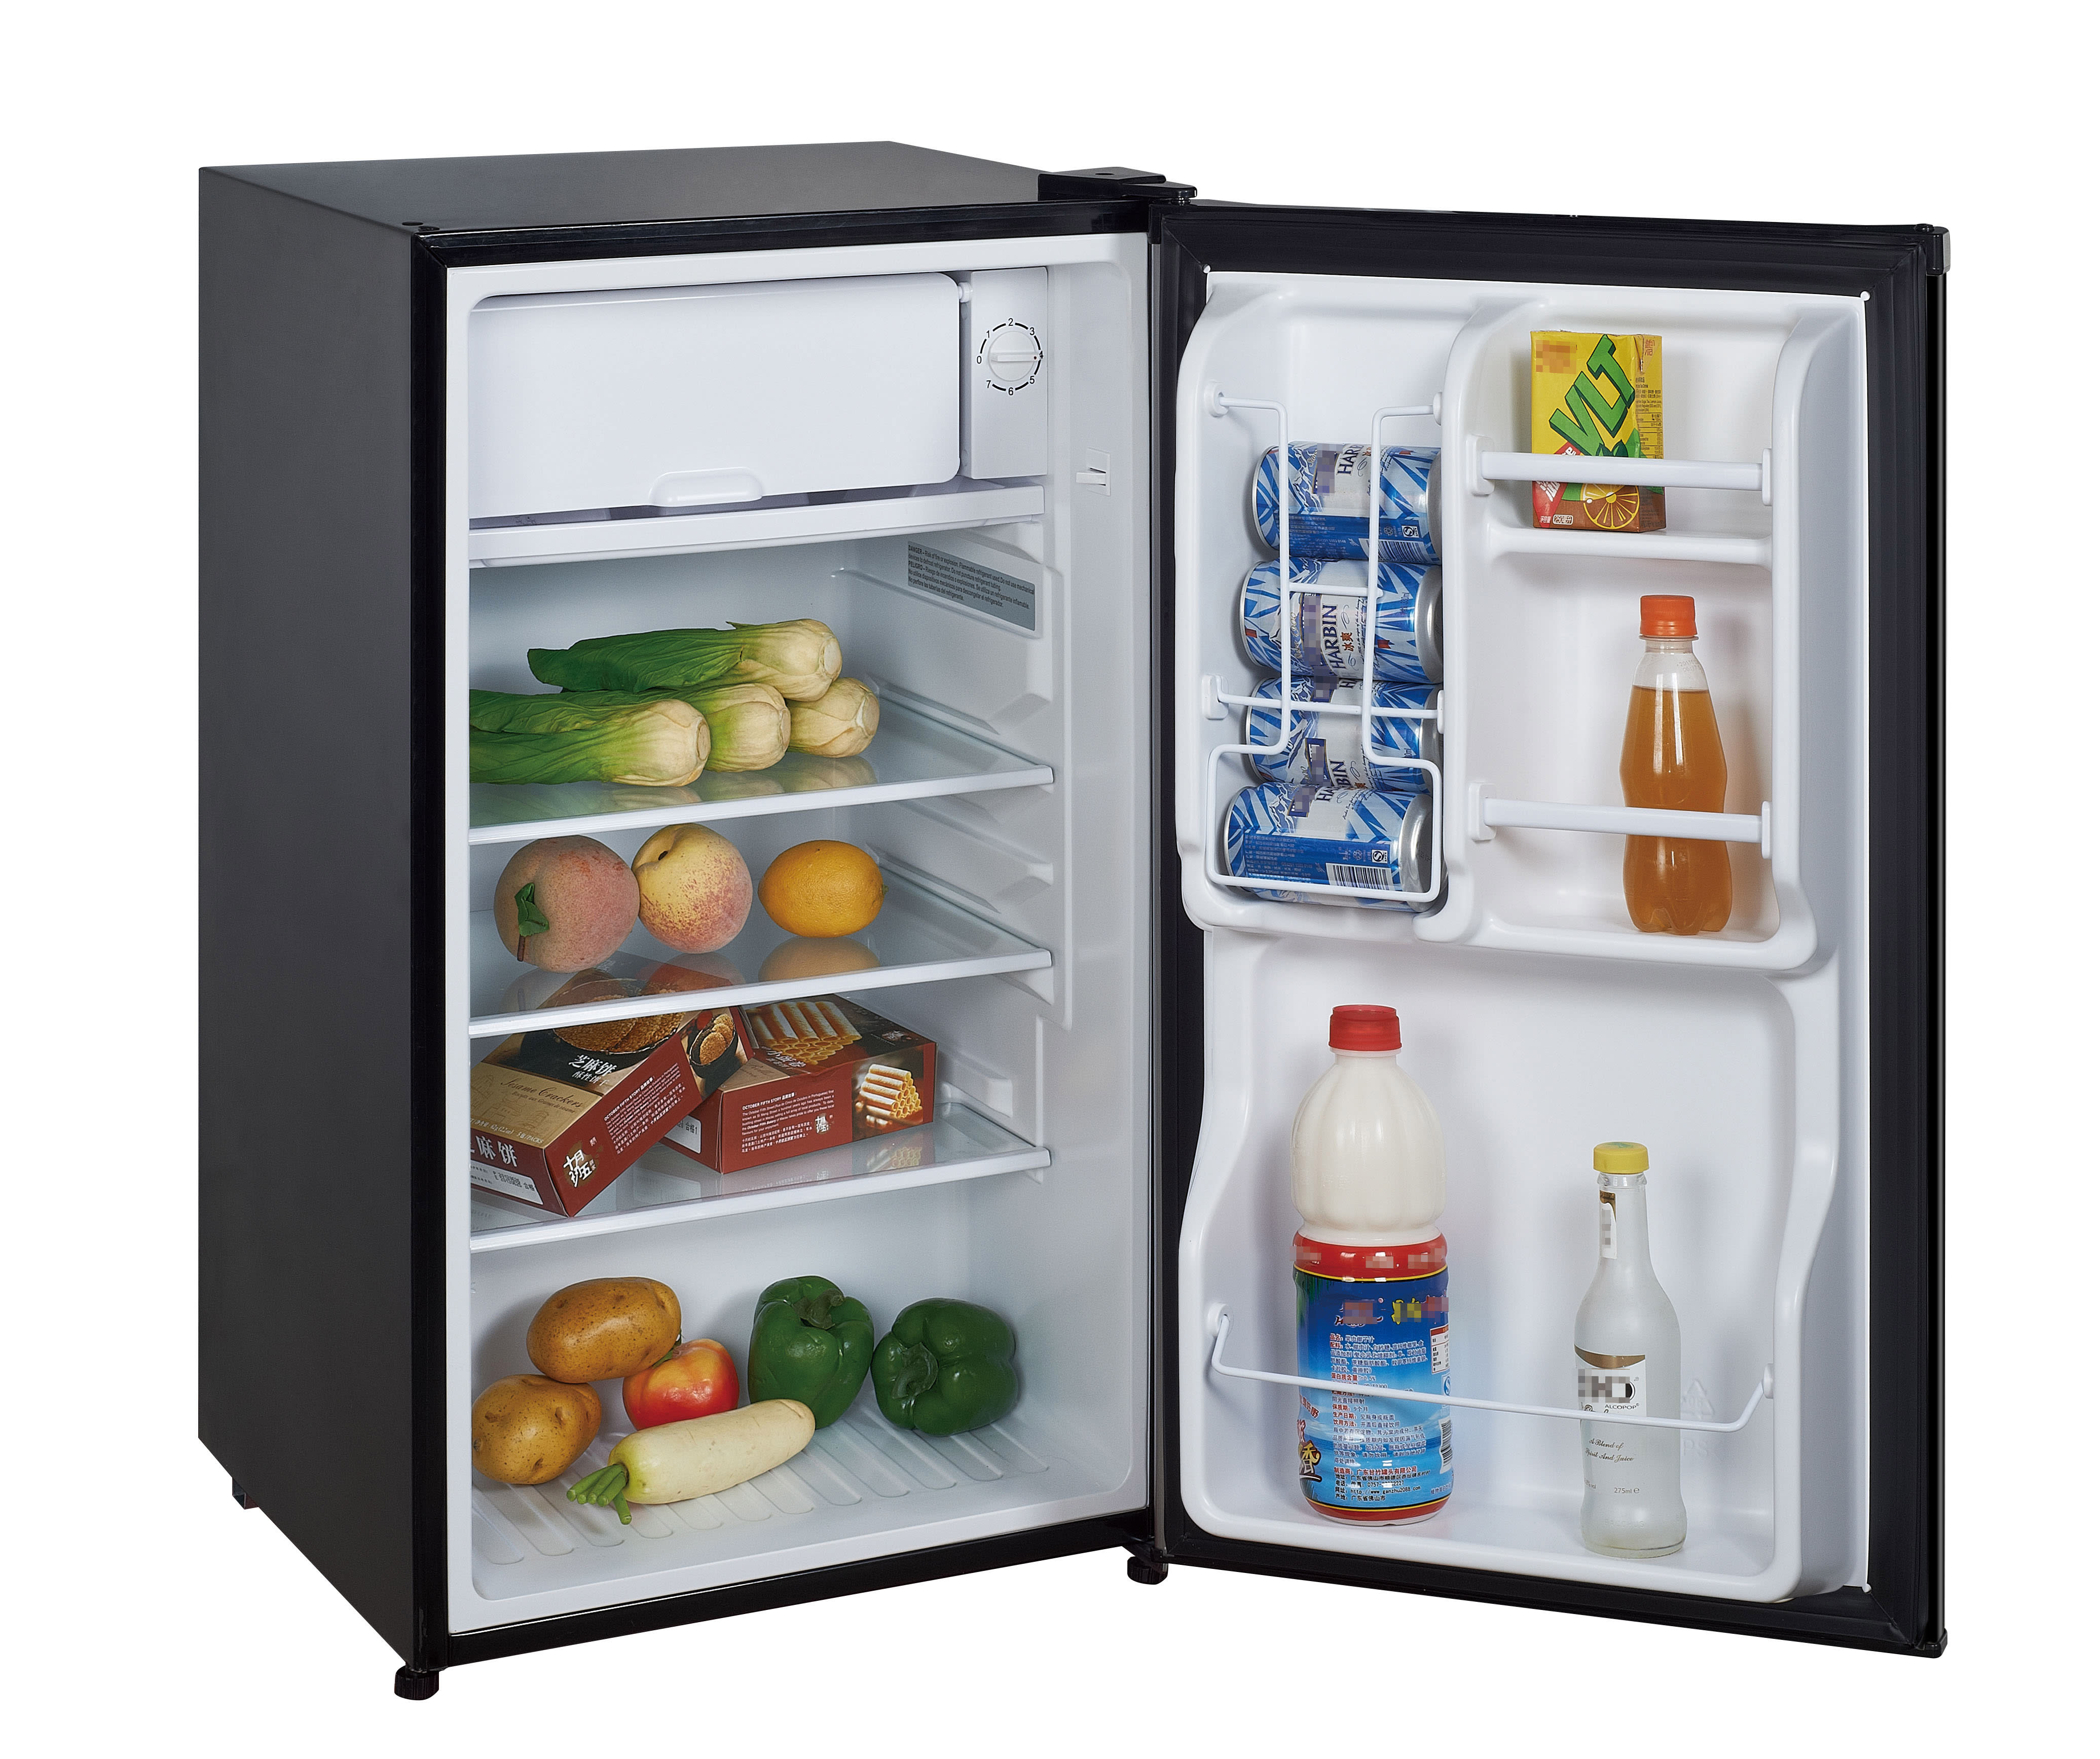 Купить низкий холодильник. Mini Fridge холодильник. Мини холодильник Mini Fridge. Минихолодильник Fridge-5. Ebr800858 03 холодильник.